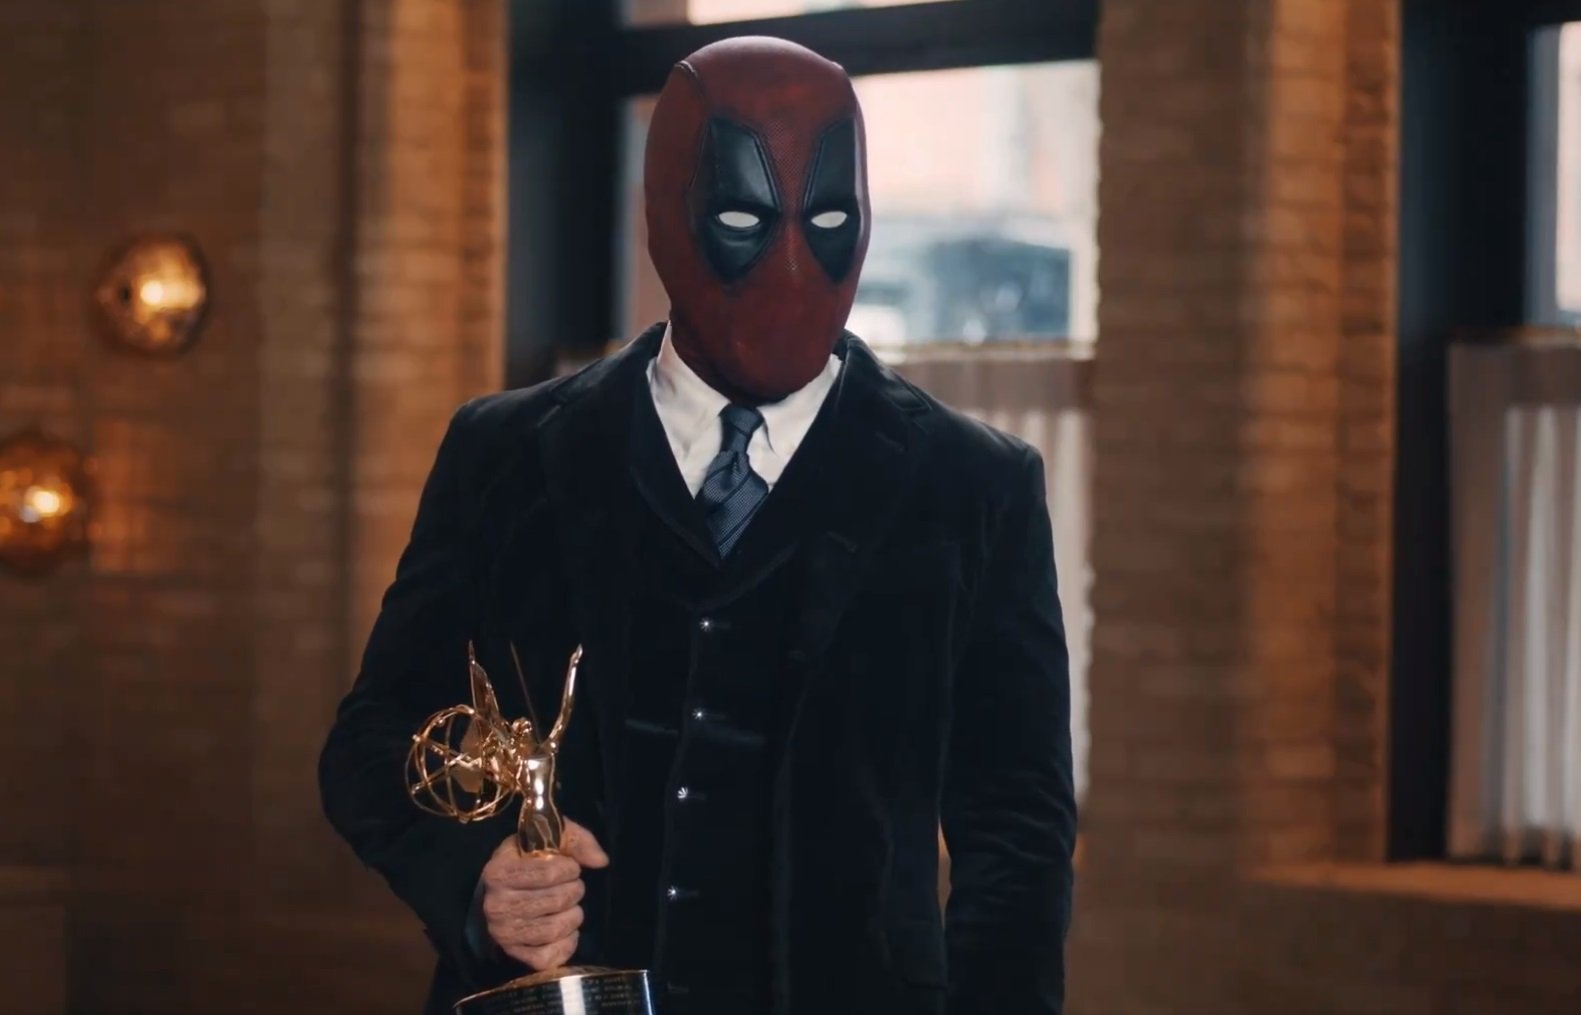 Imagem de: Ryan Reynolds vence Emmy e faz discurso como Deadpool